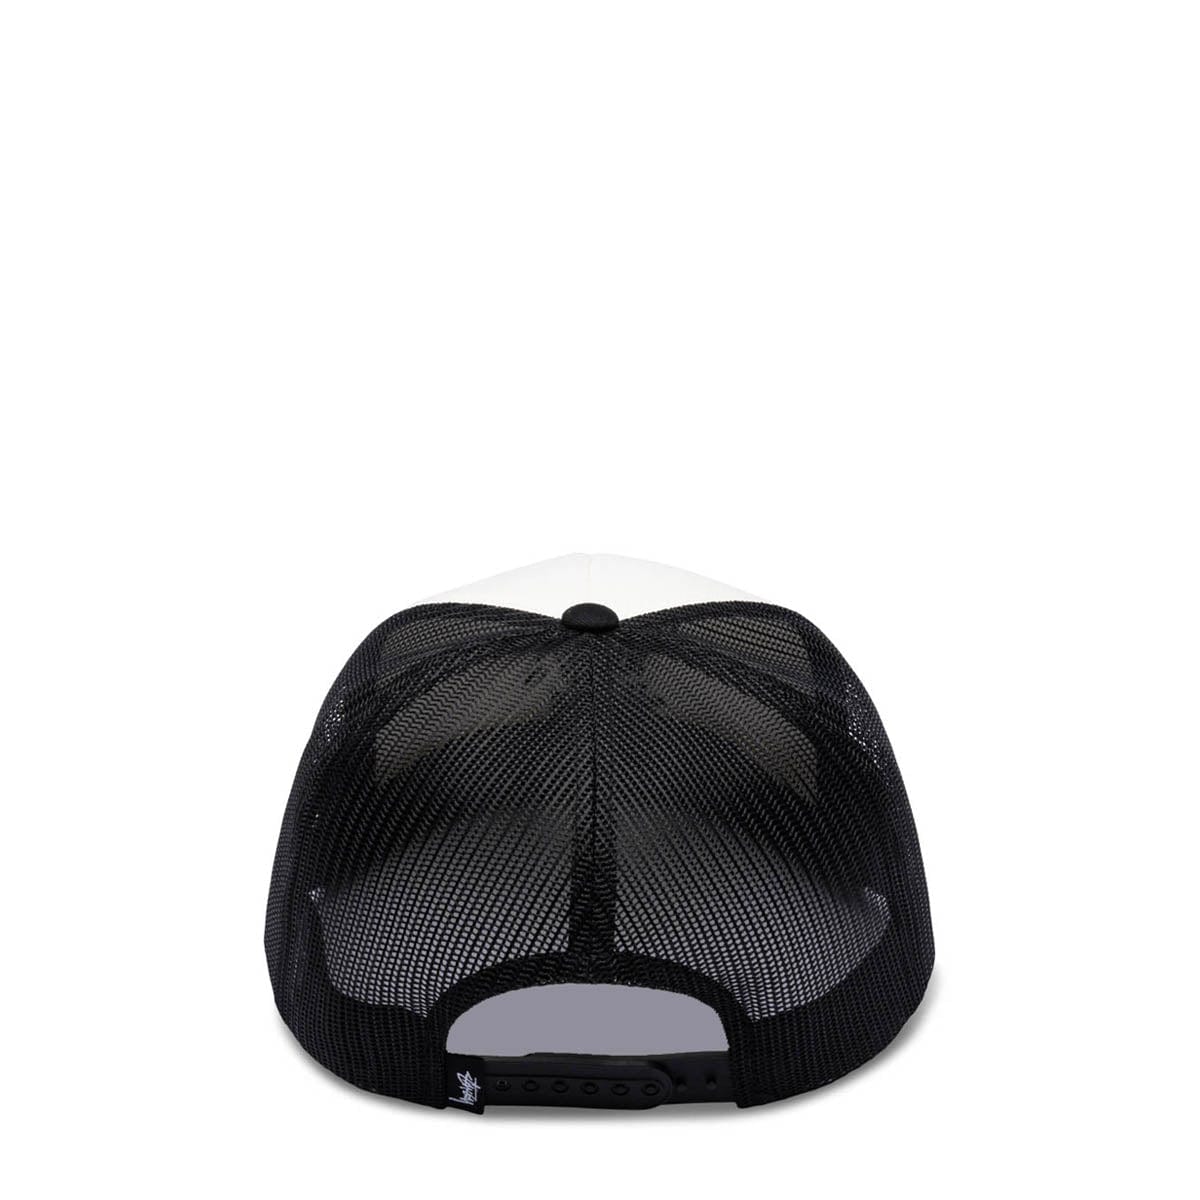 Stüssy Headwear BLACK / O/S CROWN STOCK TRUCKER HAT